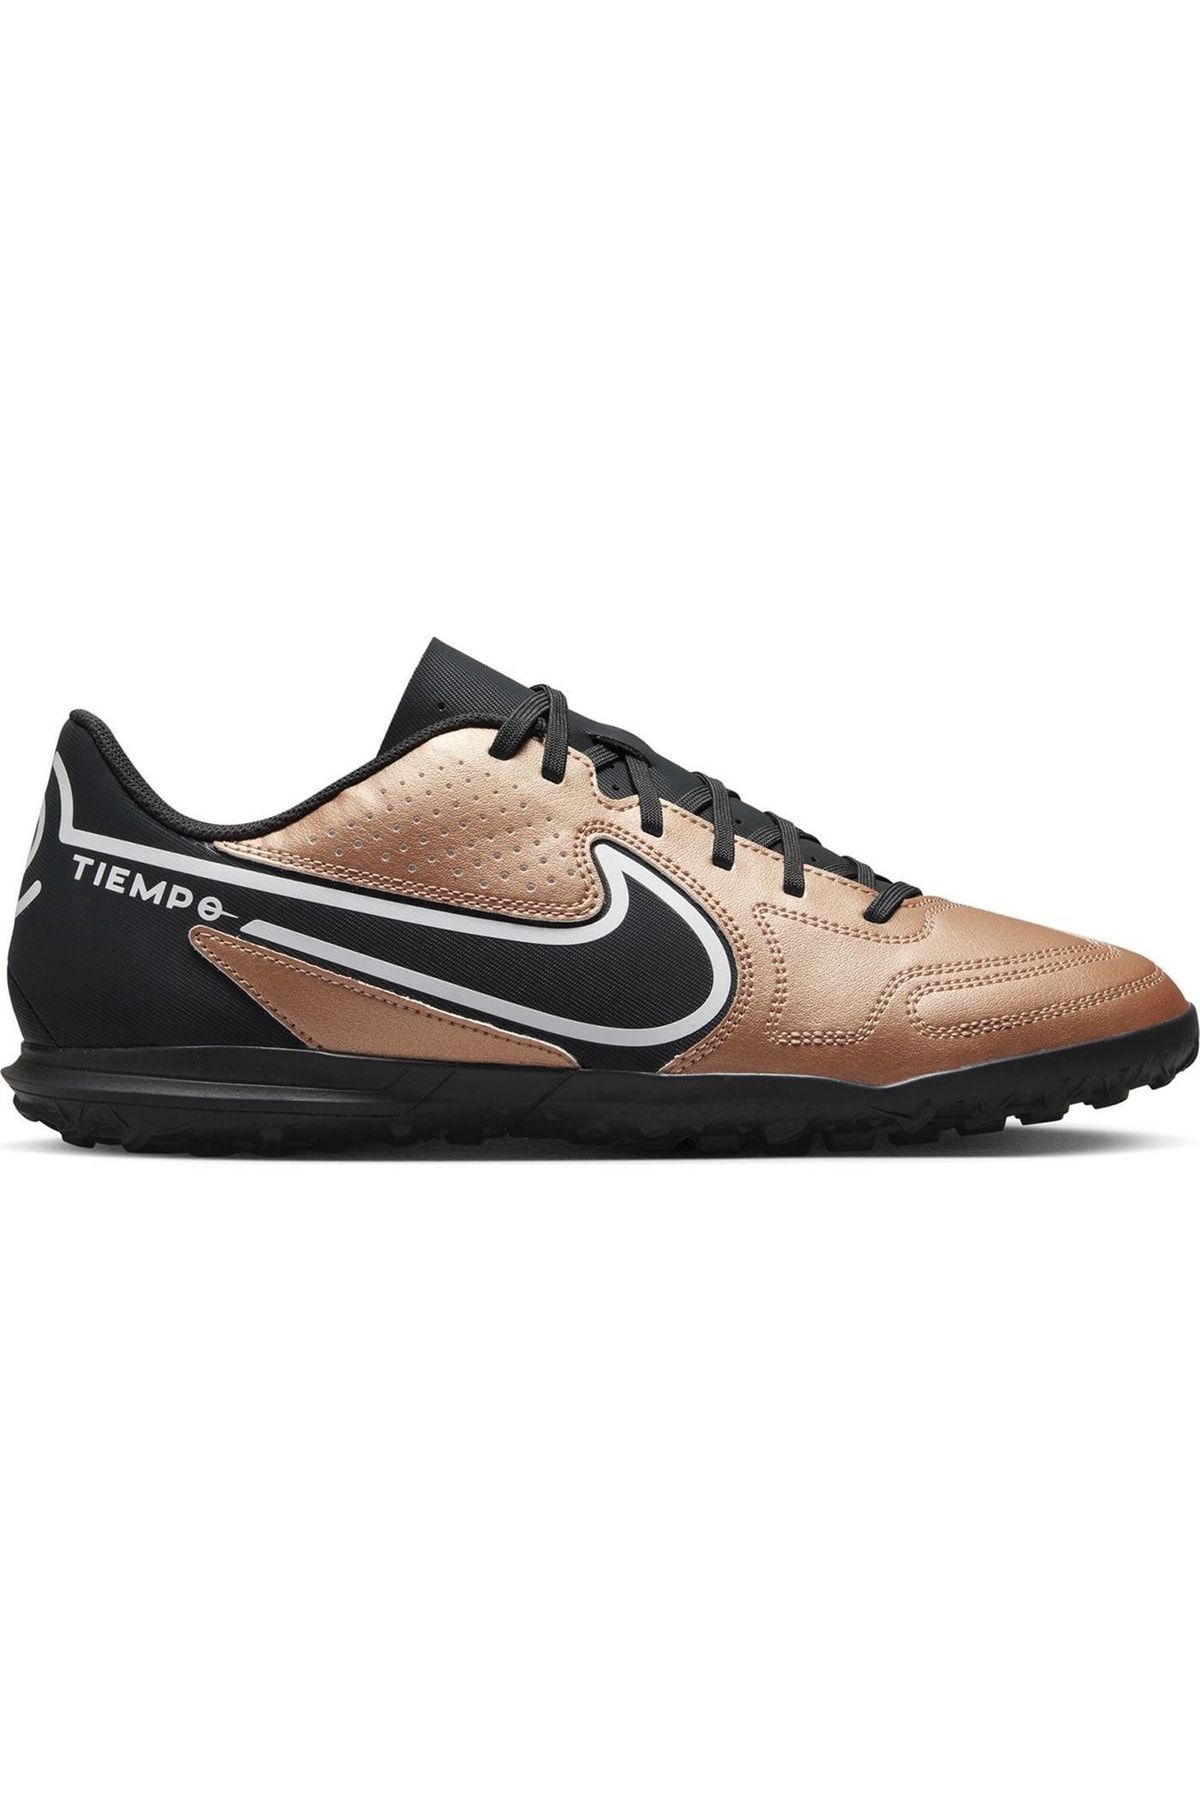 Nike Da1193-810 Legend 9 Club Tf Futbol Halısaha Ayakkabı